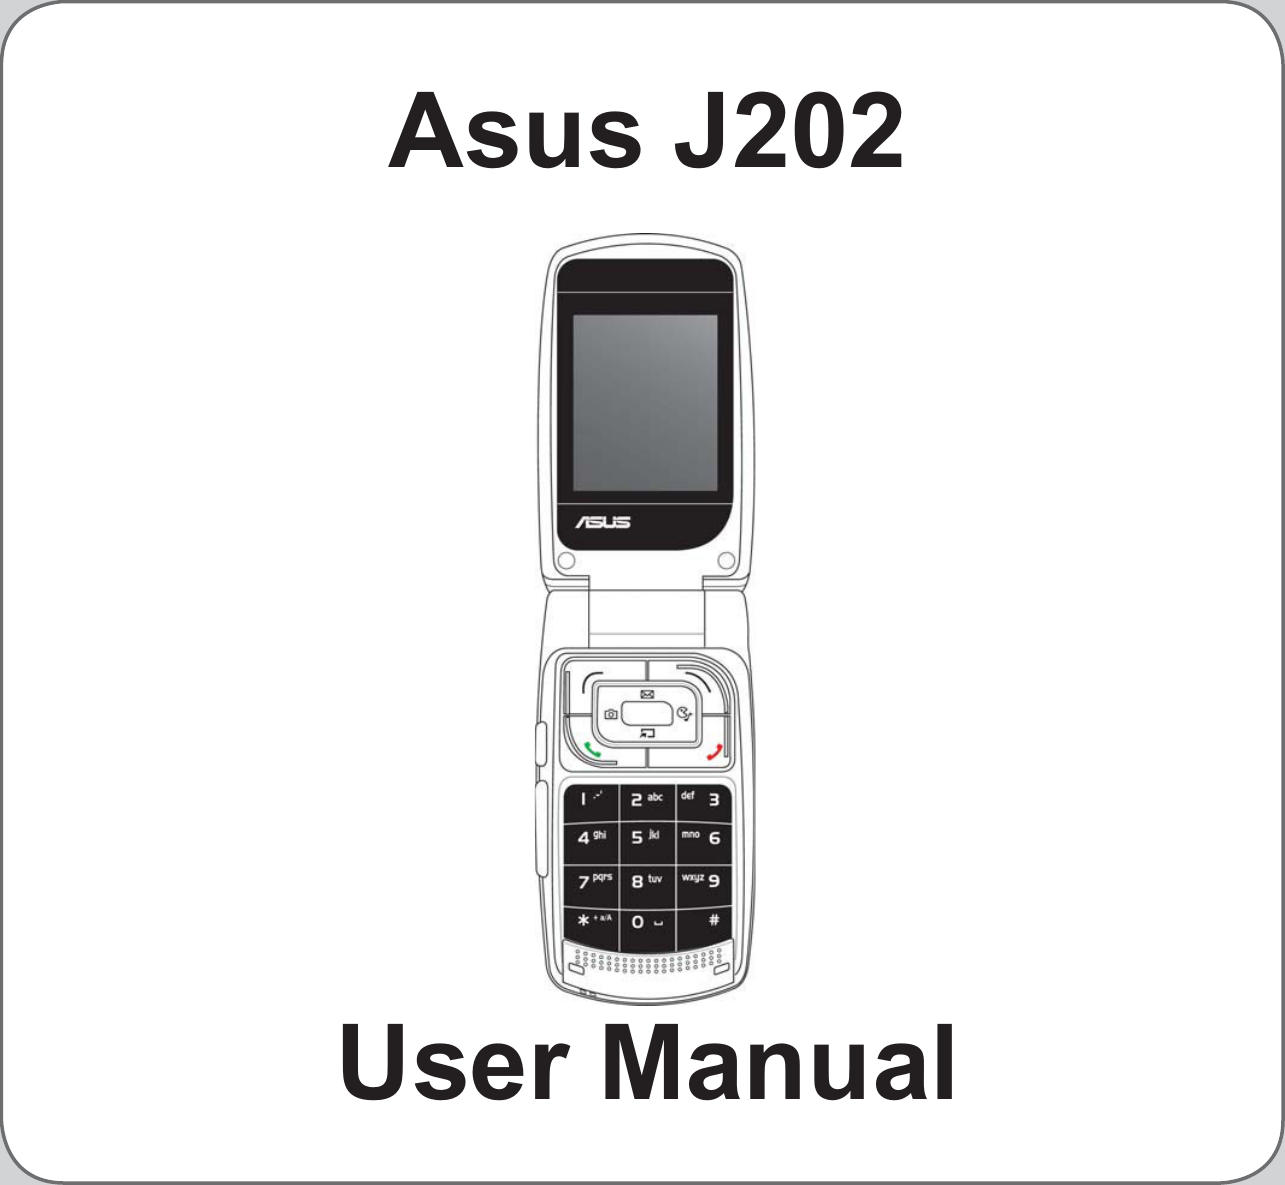 Asus J202User Manual